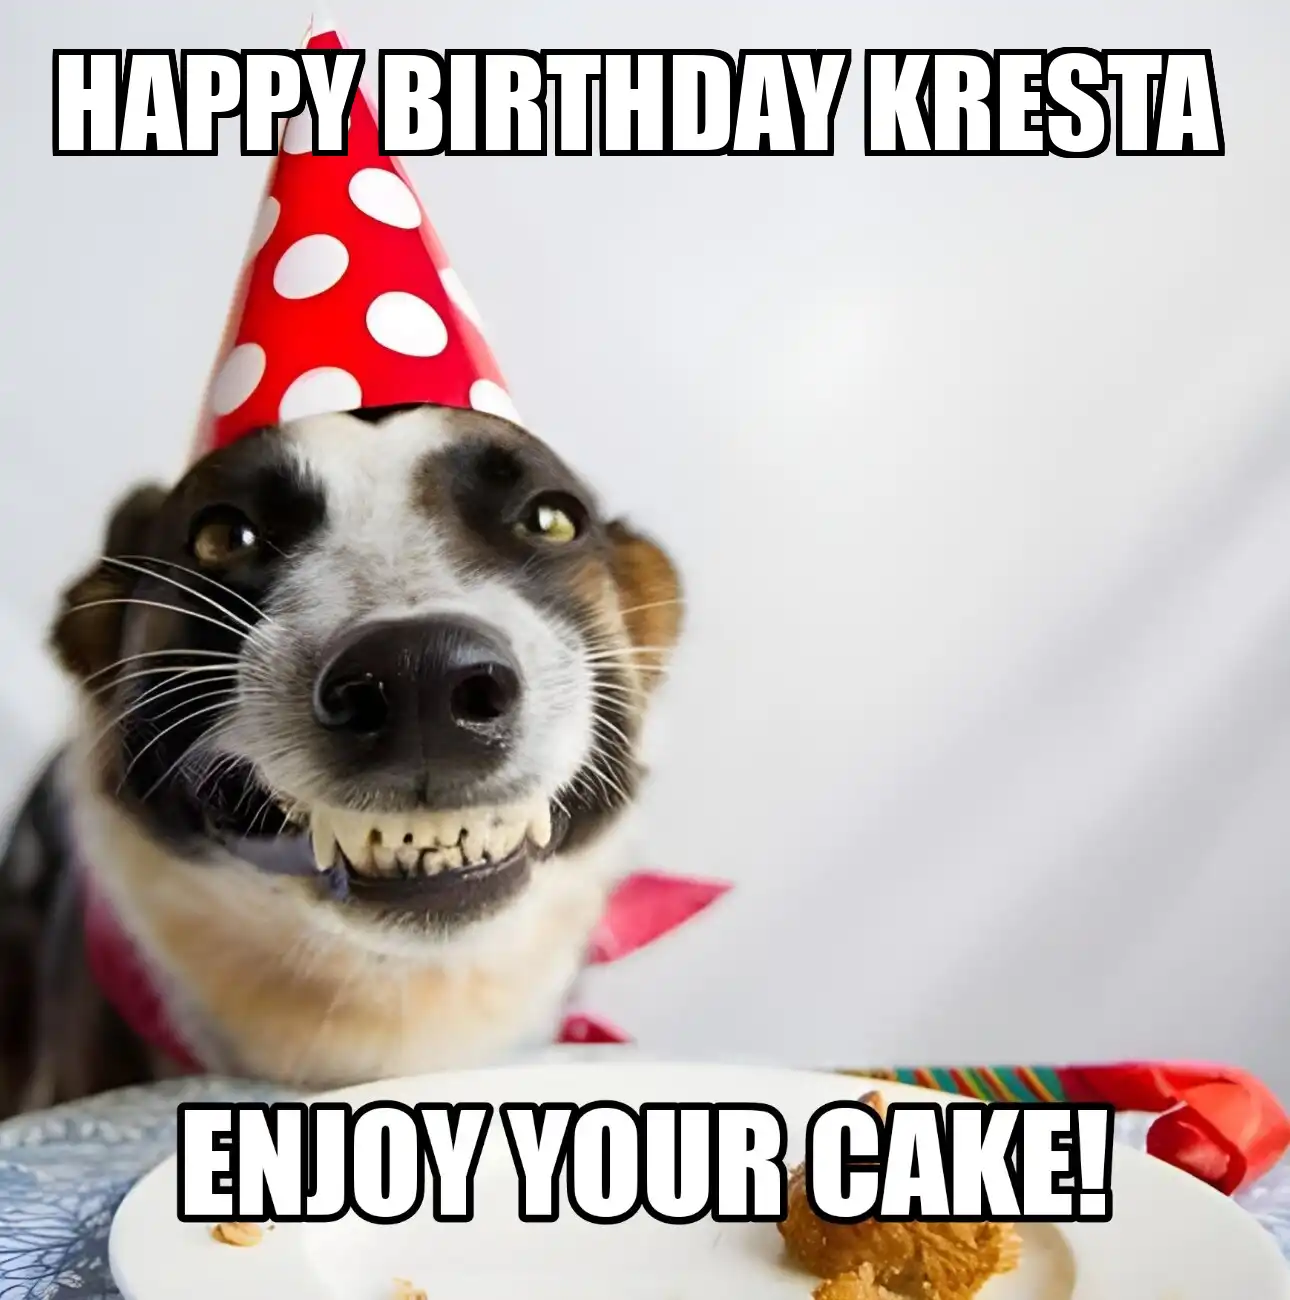 Happy Birthday Kresta Enjoy Your Cake Dog Meme